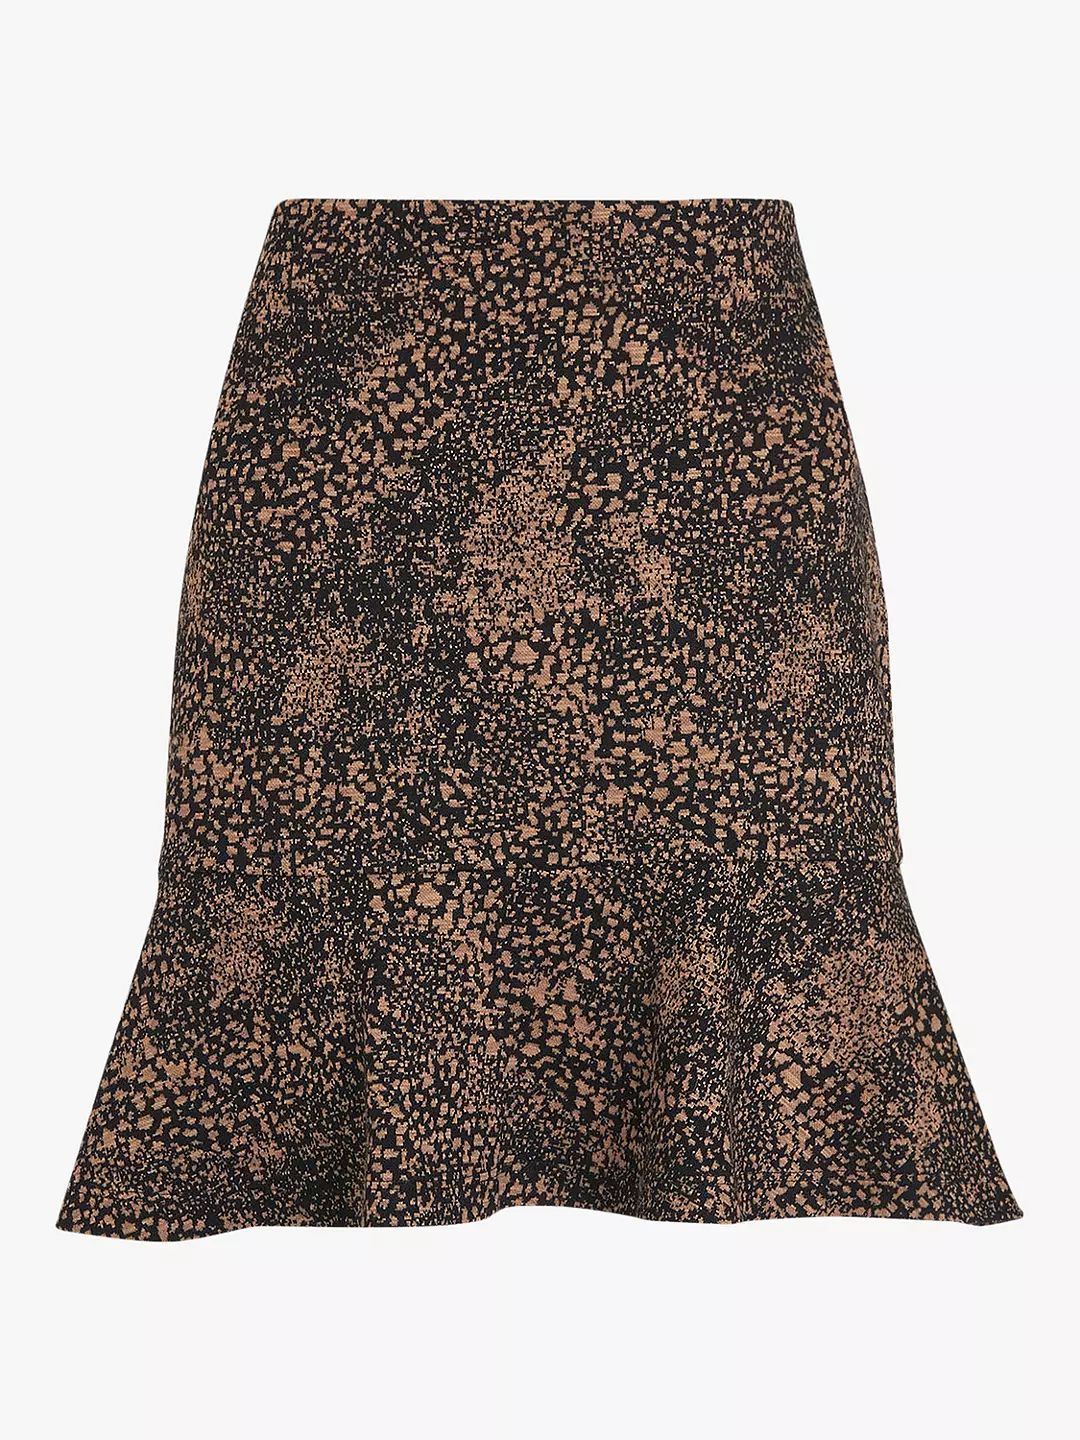 Whistles Jacquard Leopard Mini Skirt, Multi | John Lewis (UK)